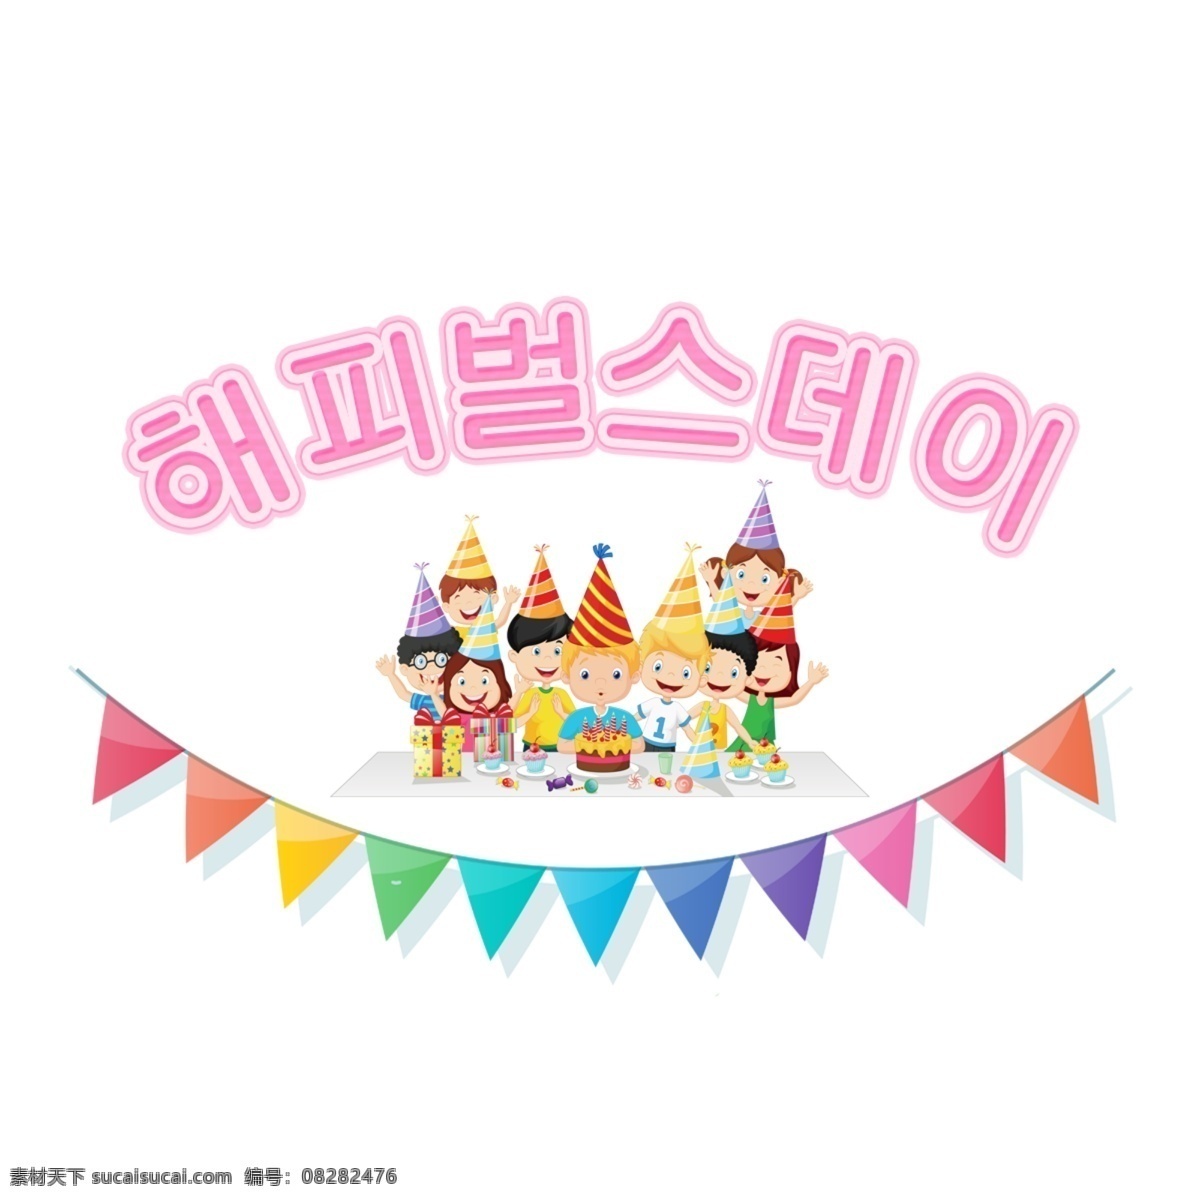 韩国 报纸 上 文字 人 流血 气球 节 字母 火花 生日 儿童 卡通字体 蛋糕 海报 字形 韩国字体 避免惩罚 这些孩子